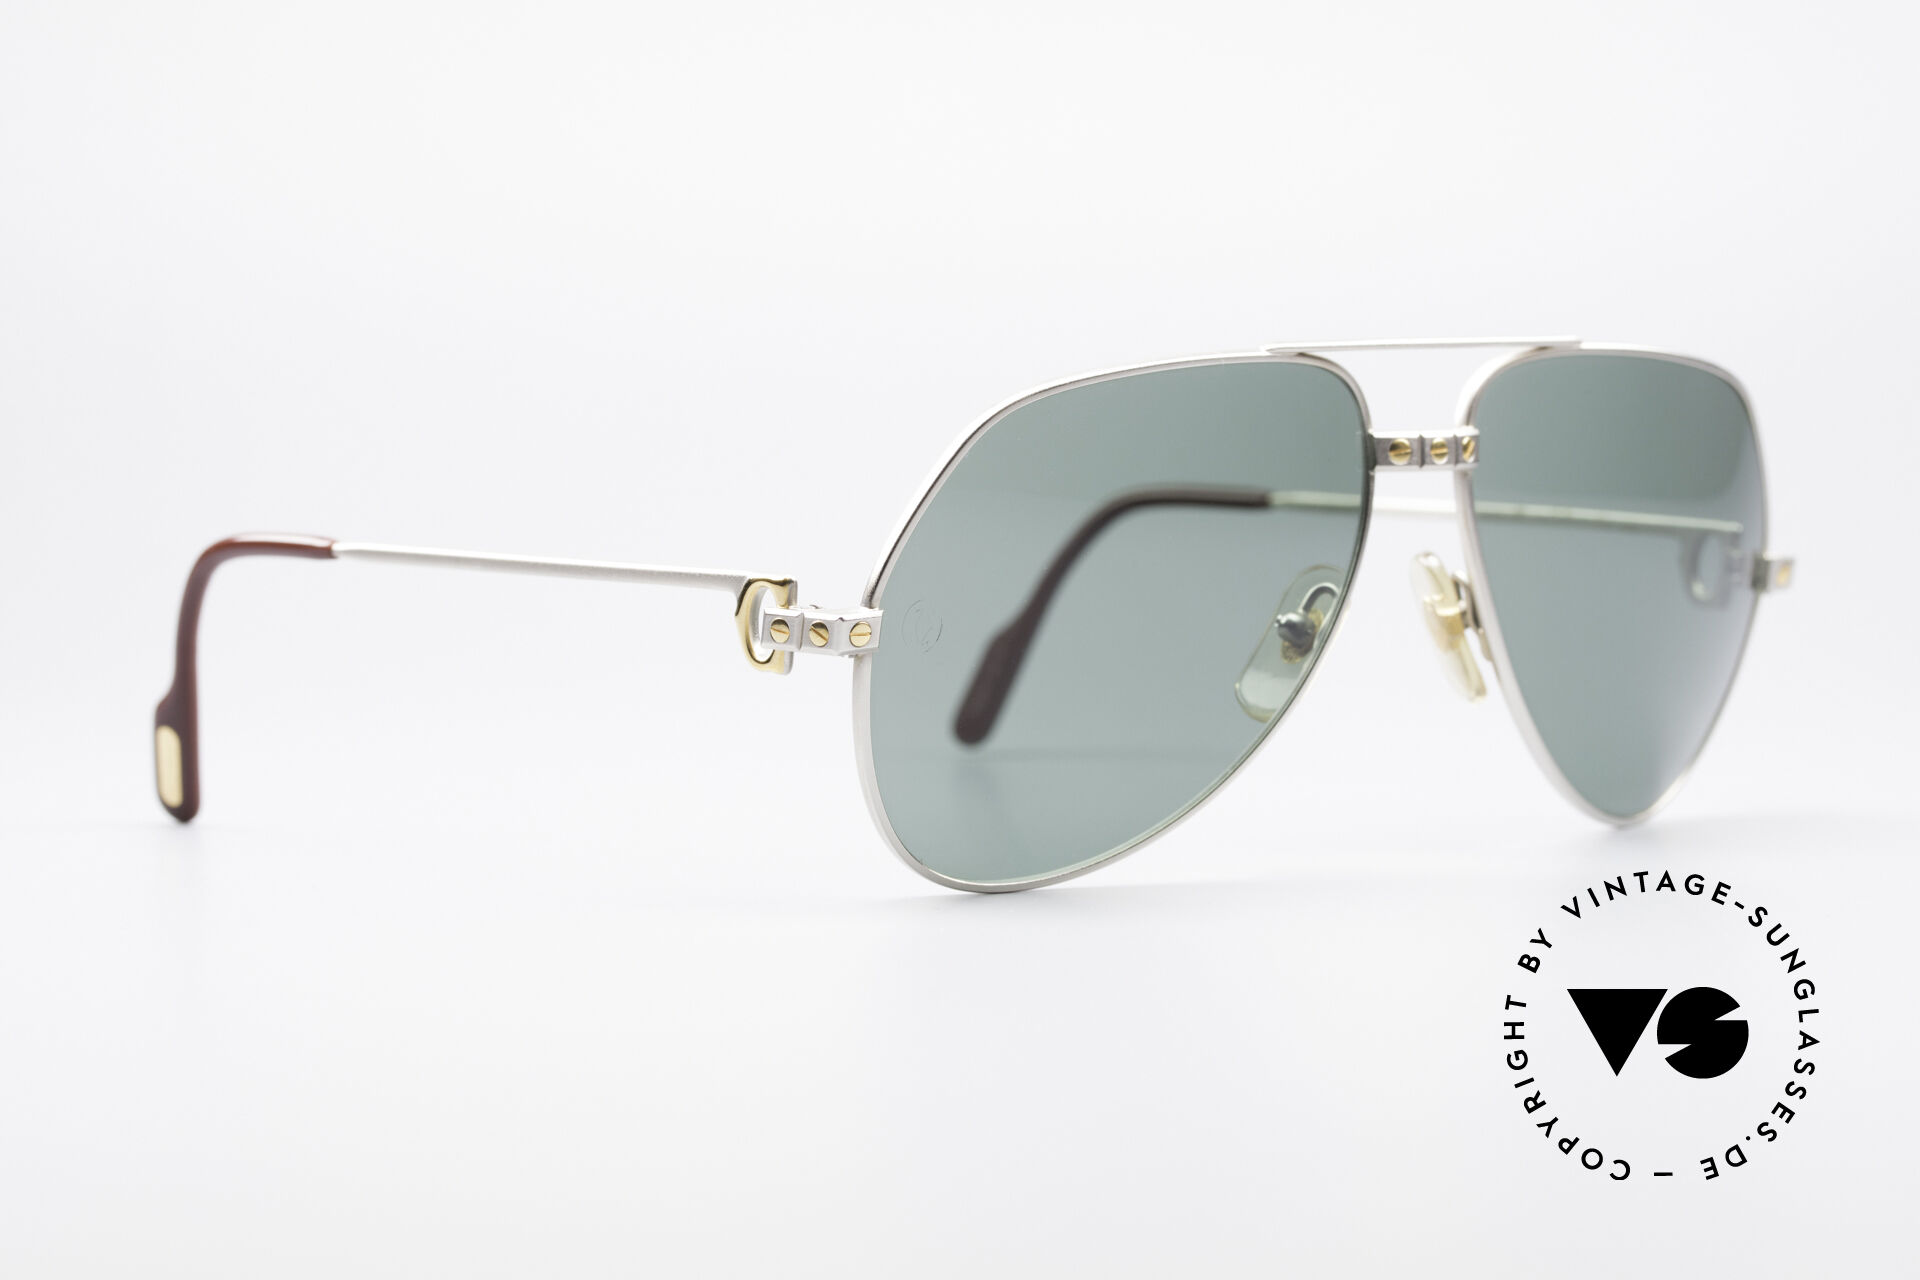 Sunglasses Cartier Vendome Santos - M Rare Luxury Palladium Finish